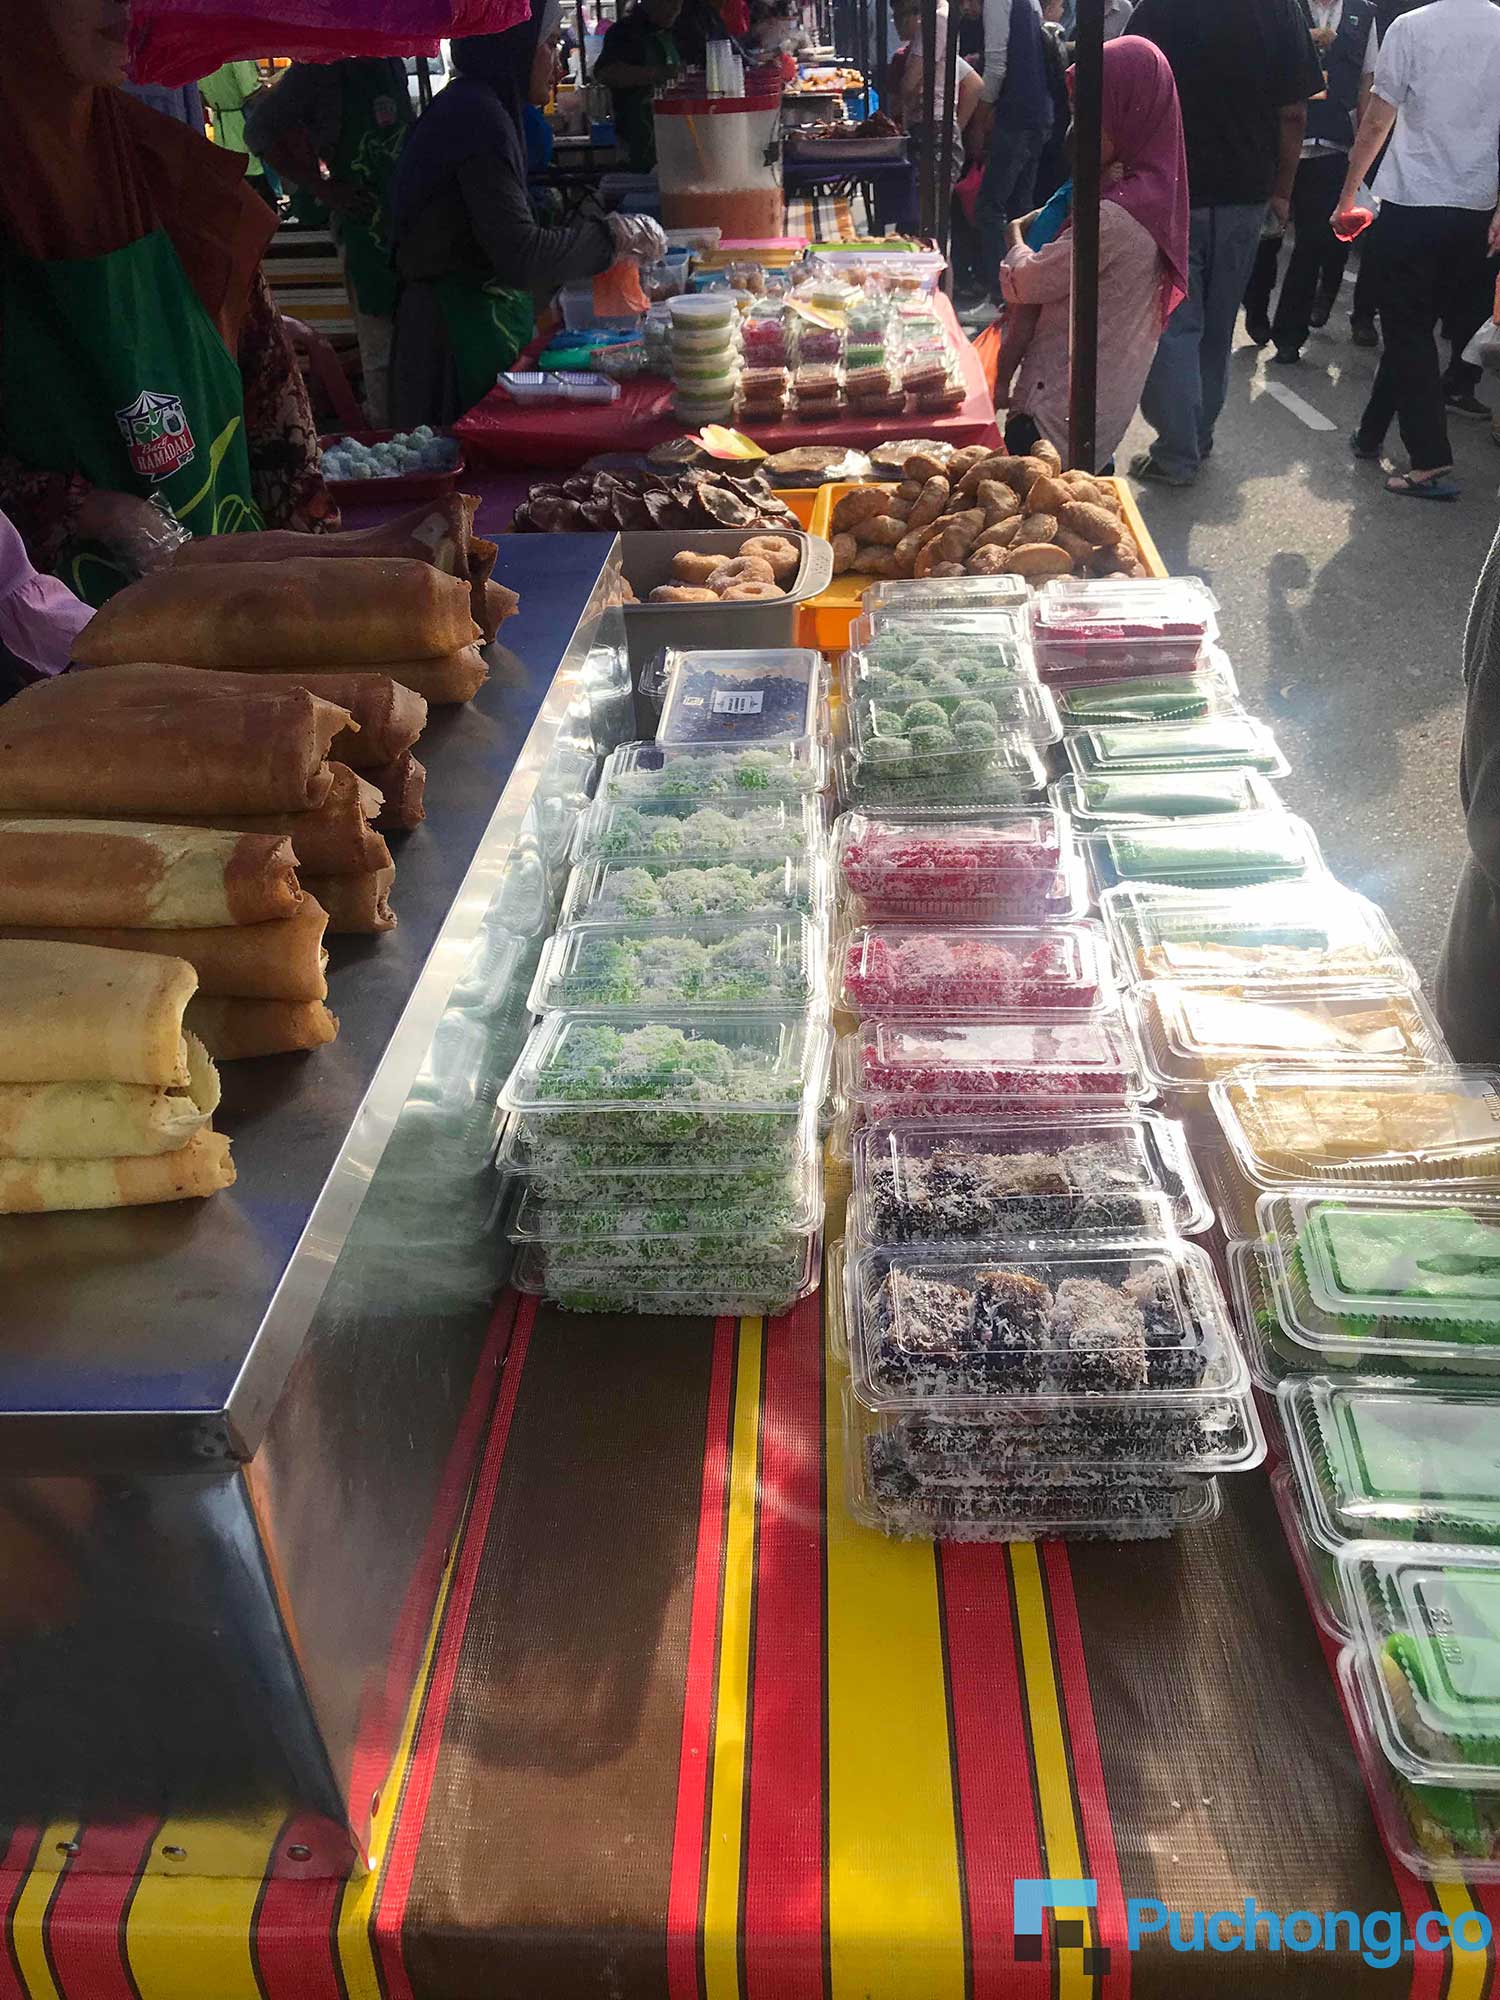 Puchong bazaar ramadhan Buffet Ramadan